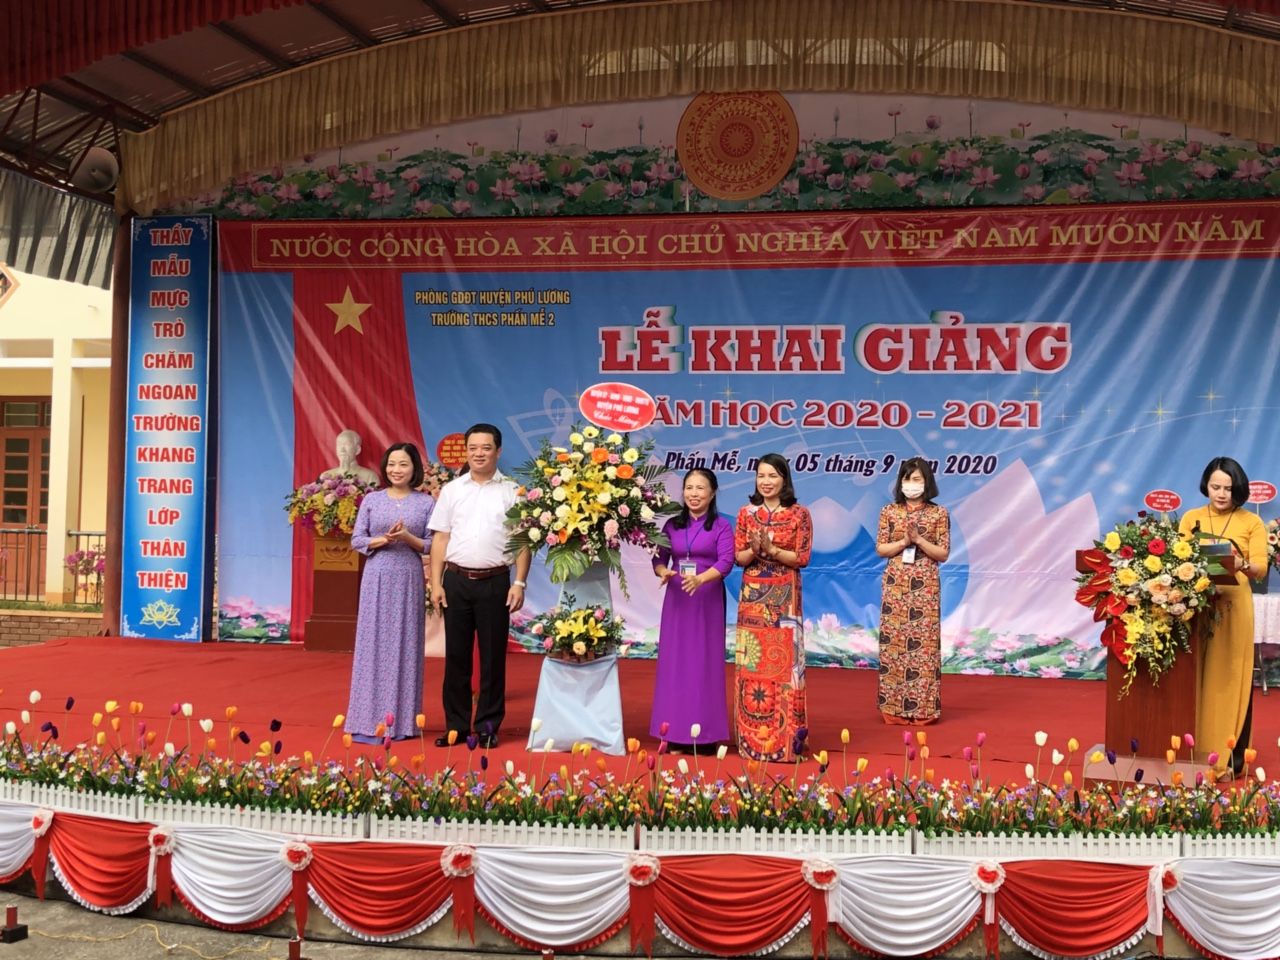 Kết quả nổi bật trong phát triển giáo dục và đào tạo ở huyện Phú Lương- Thái Nguyên